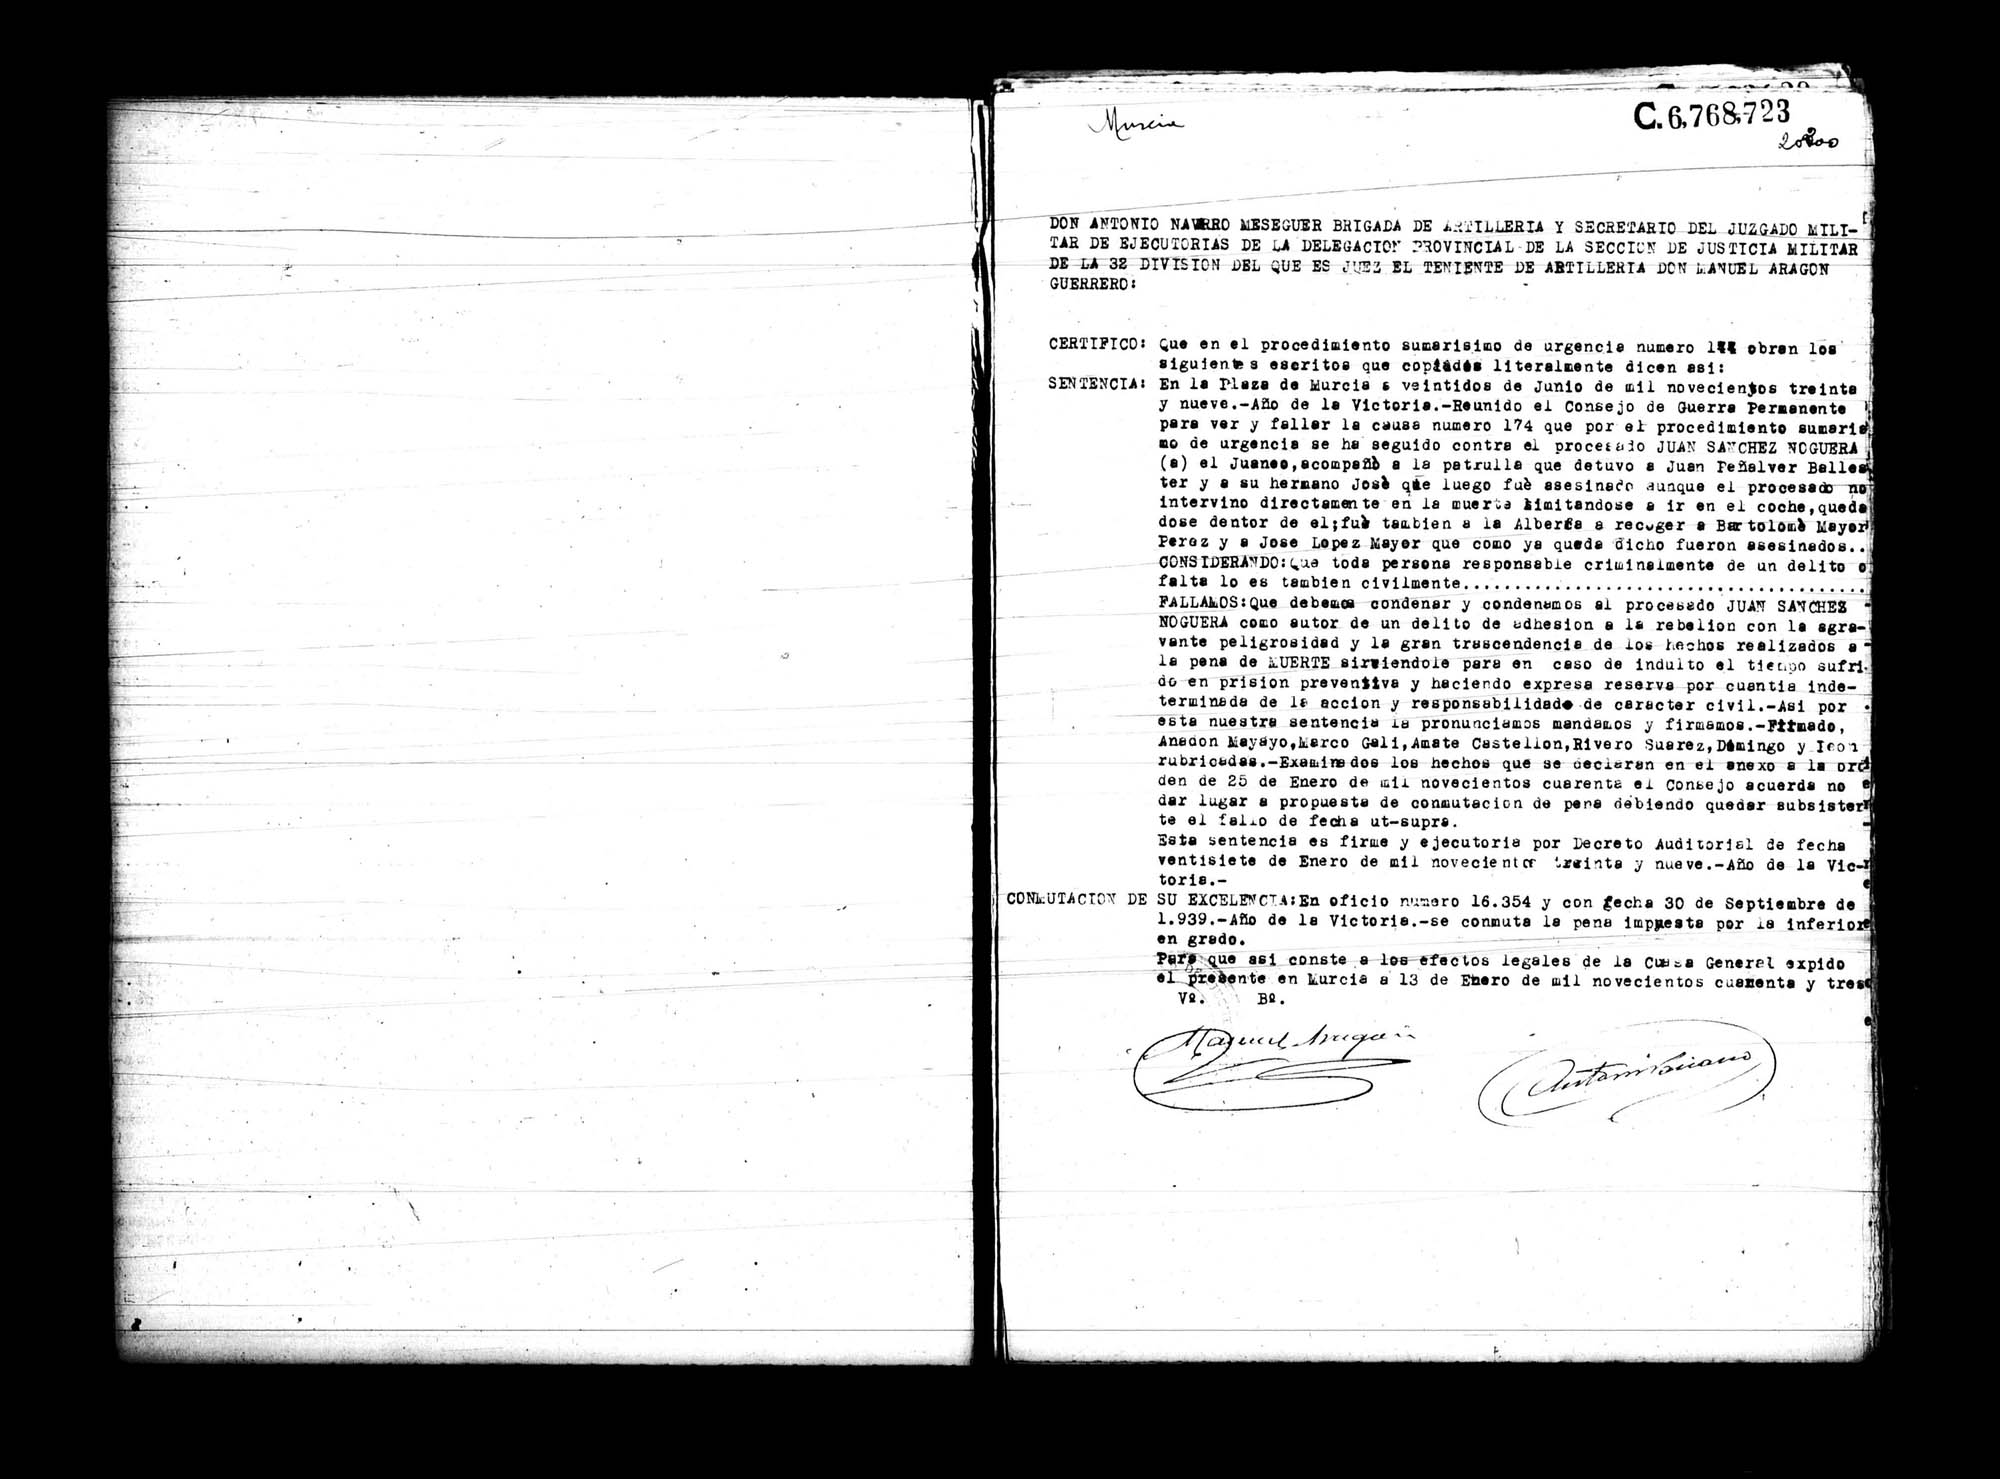 Certificado de la sentencia pronunciada contra Juan Sánchez Noguera, causa 174, el 22 de junio de 1939 en Murcia.